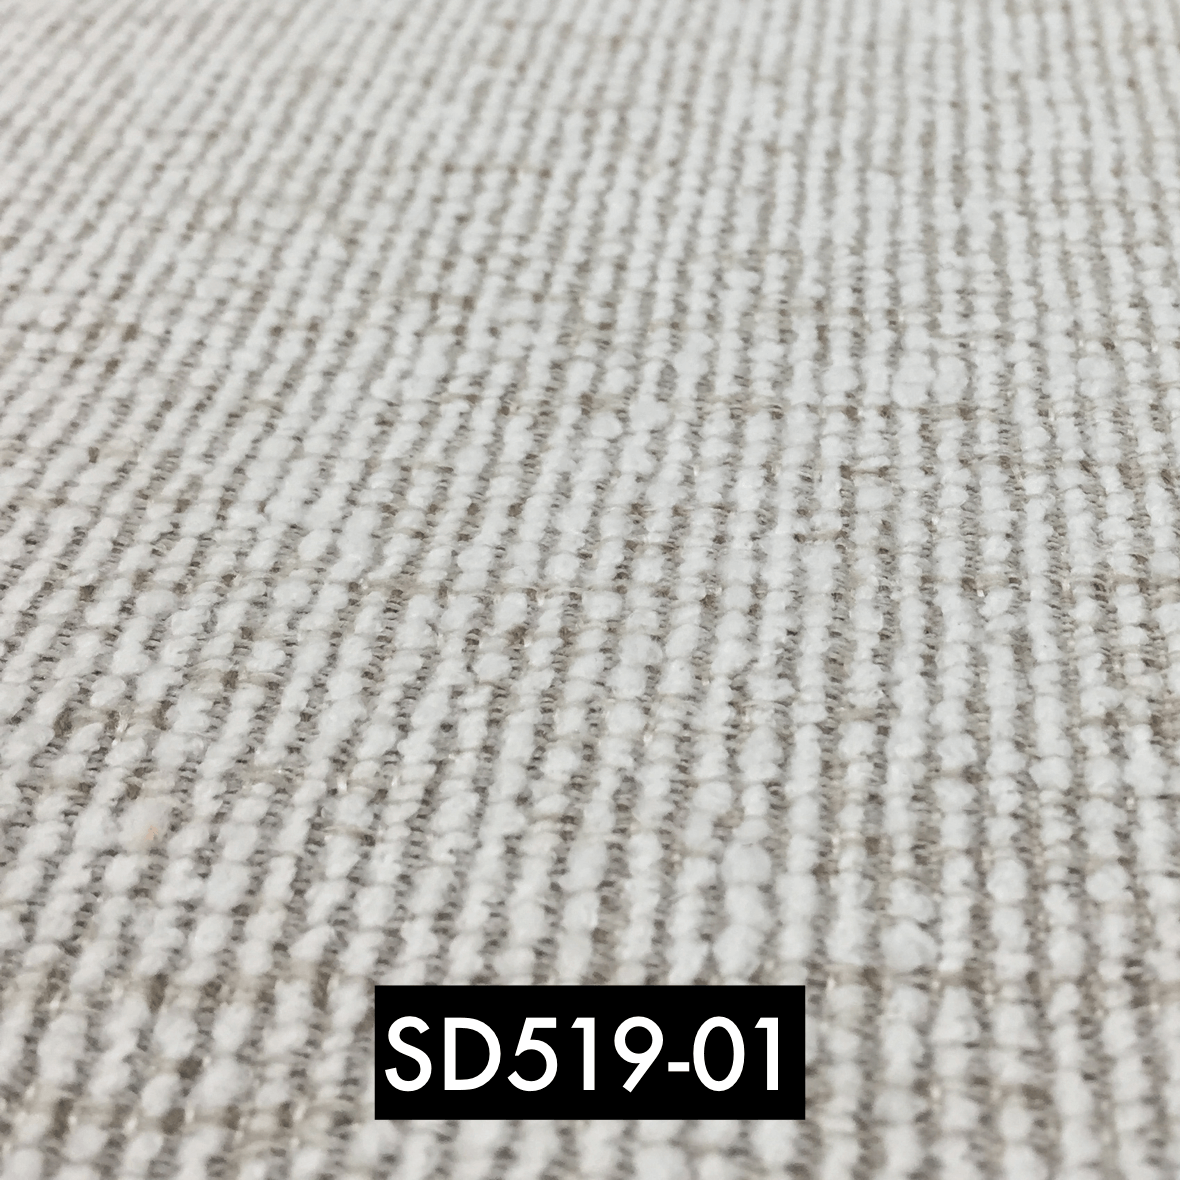 SD519-01